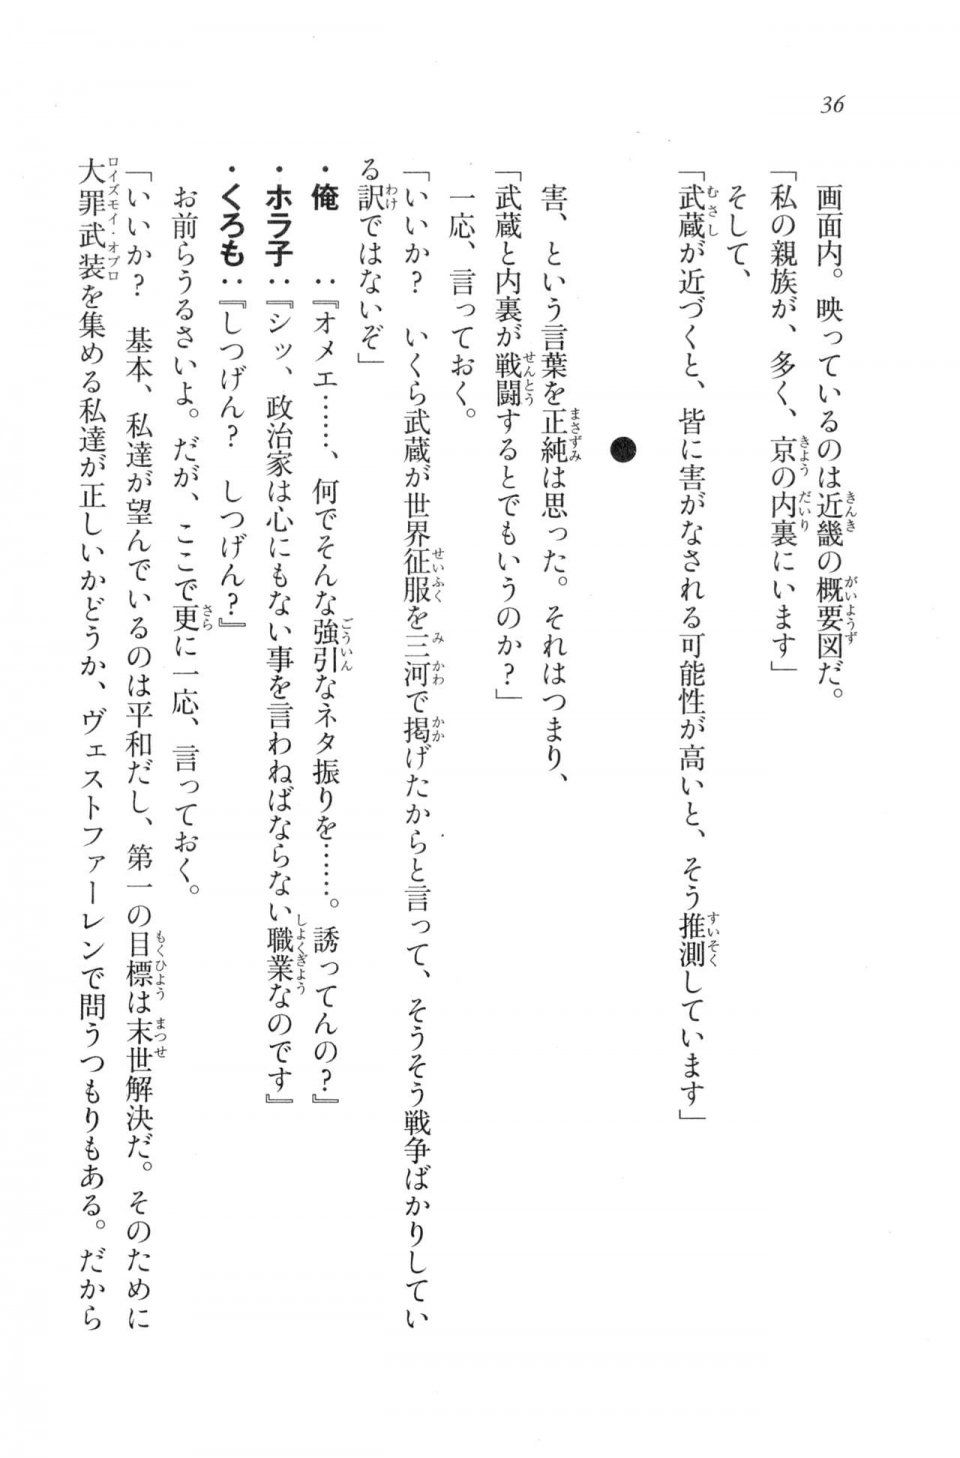 Kyoukai Senjou no Horizon LN Vol 20(8B) - Photo #36